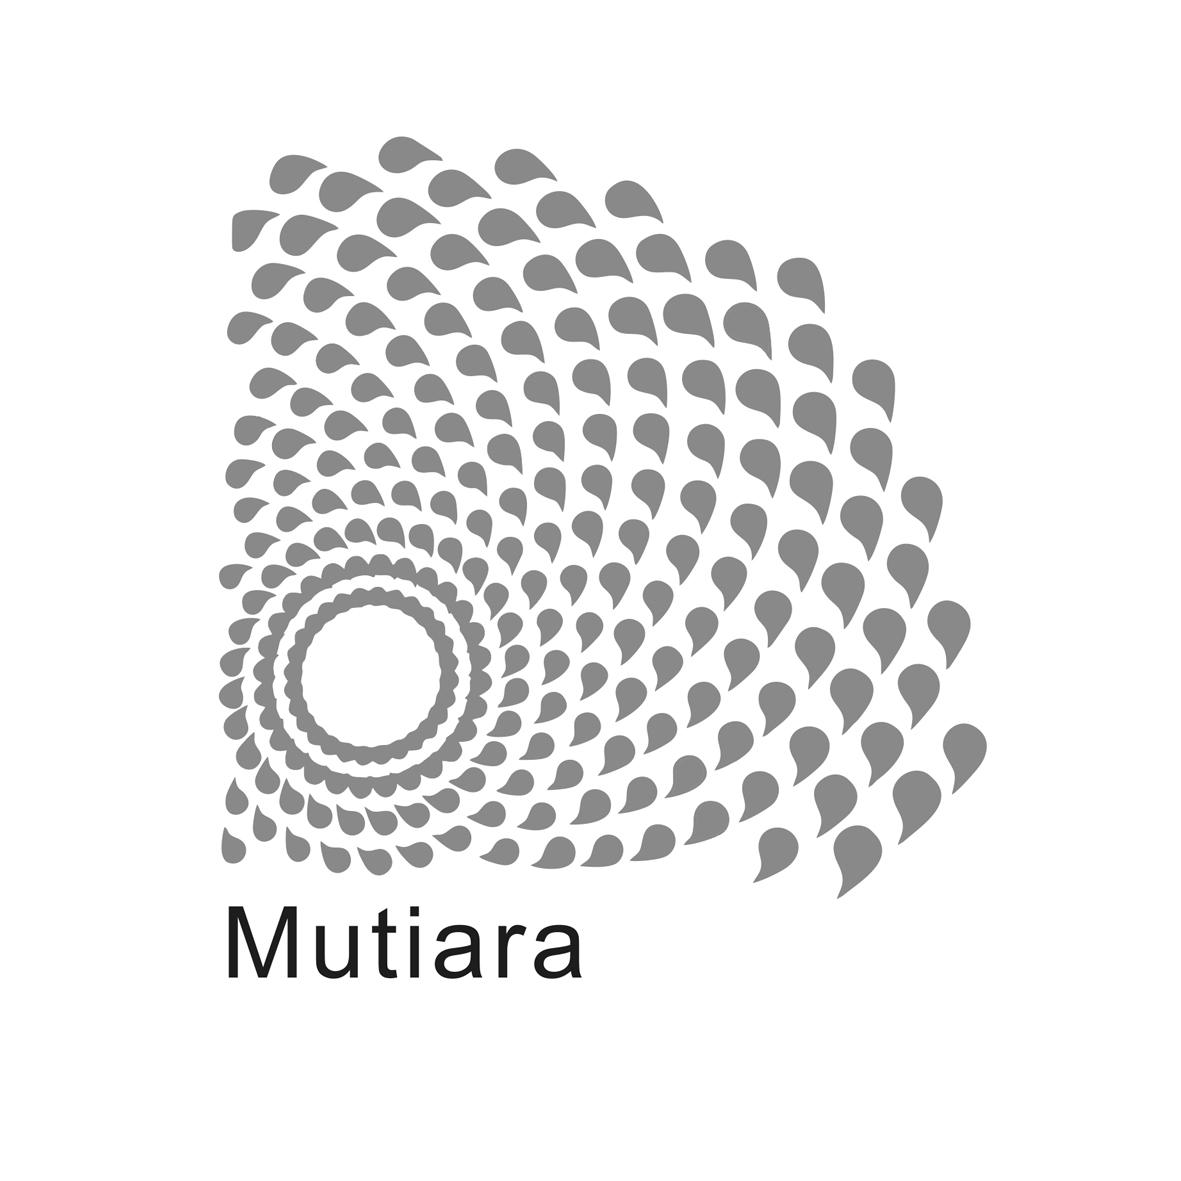 MUTIARA